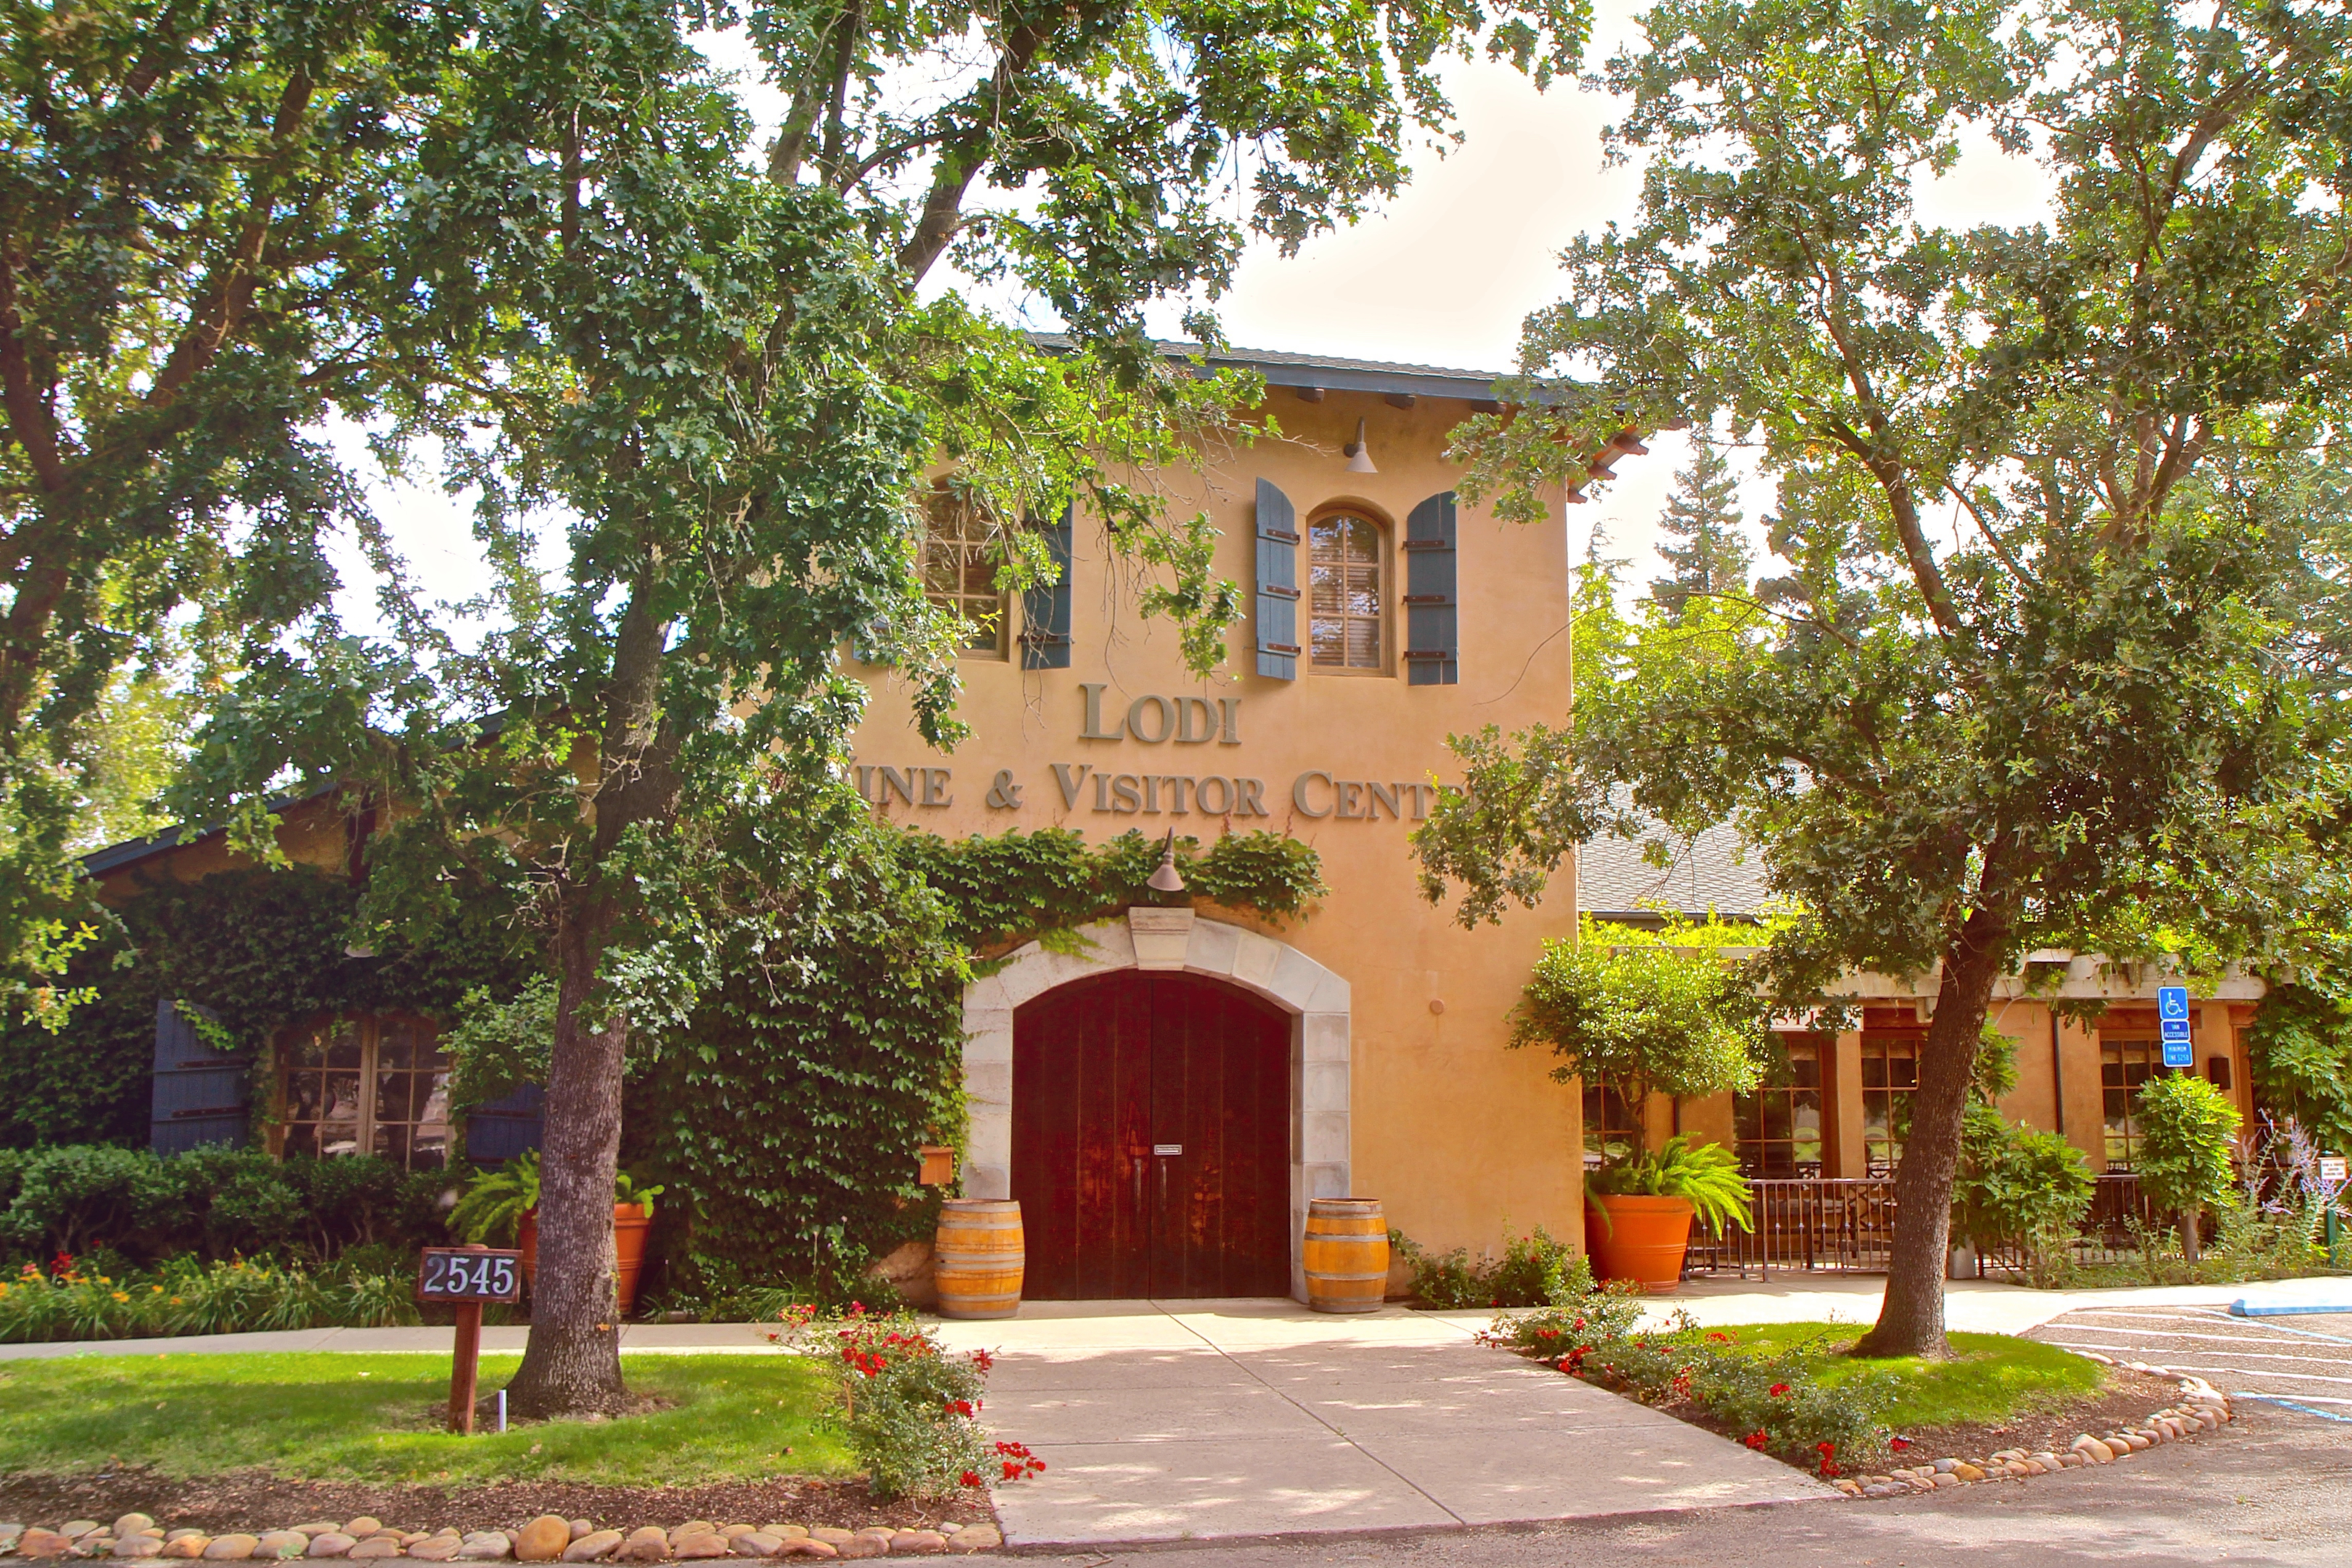 The Lodi Visitor Center